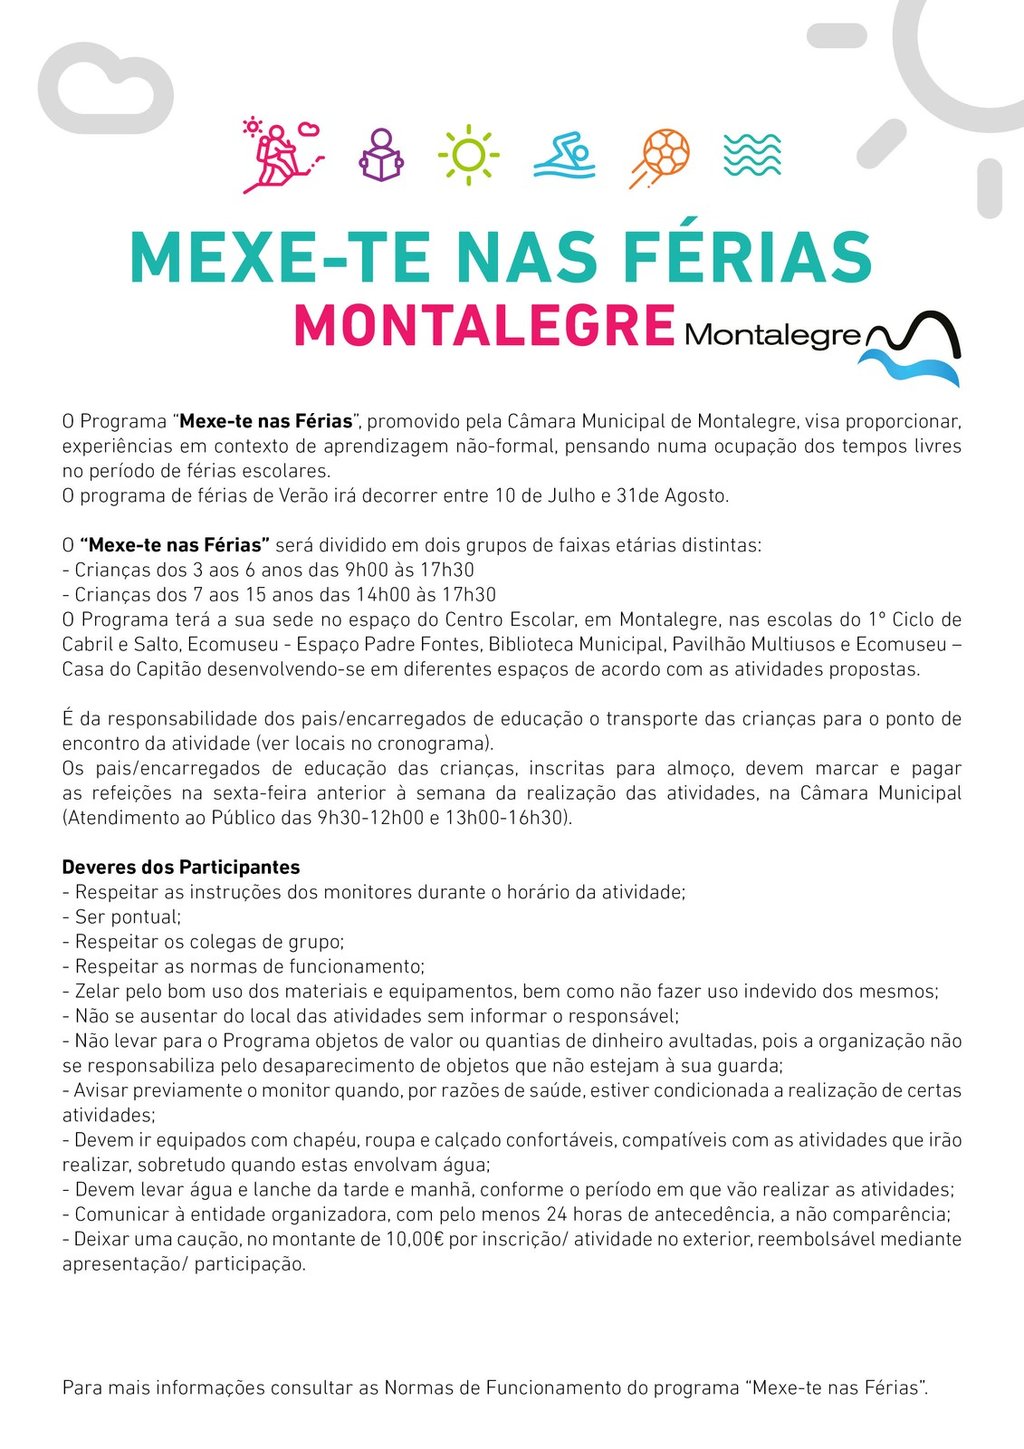 MONTALEGRE (MEXE-TE NAS FÉRIAS 2023) - NORMAS